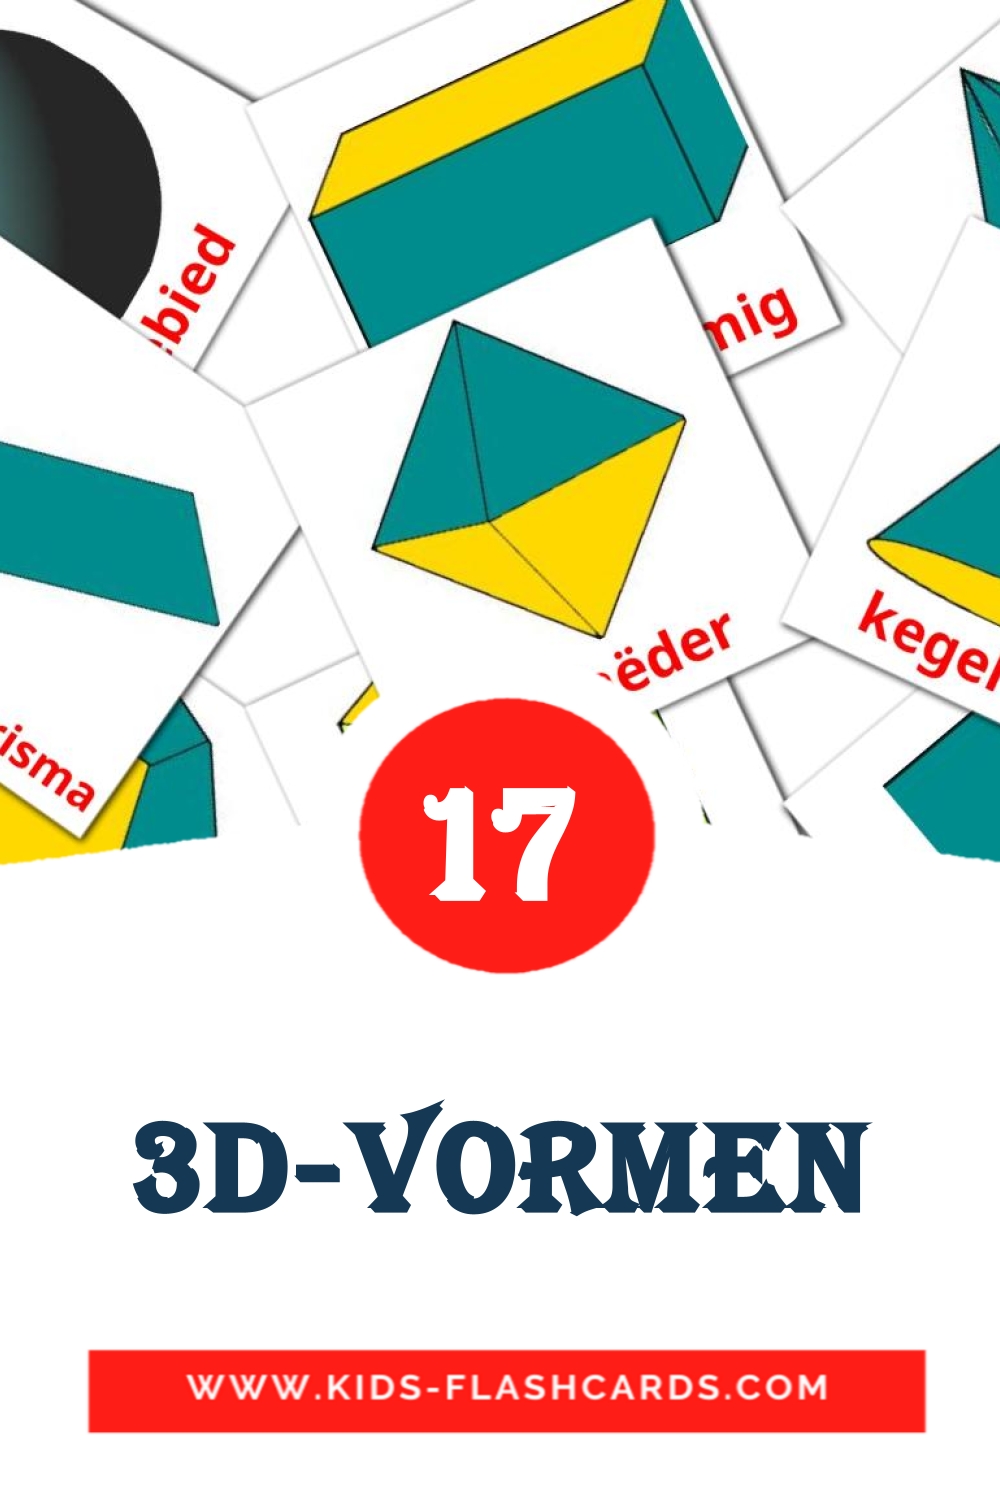 17 tarjetas didacticas de 3D-vormen para el jardín de infancia en holandés